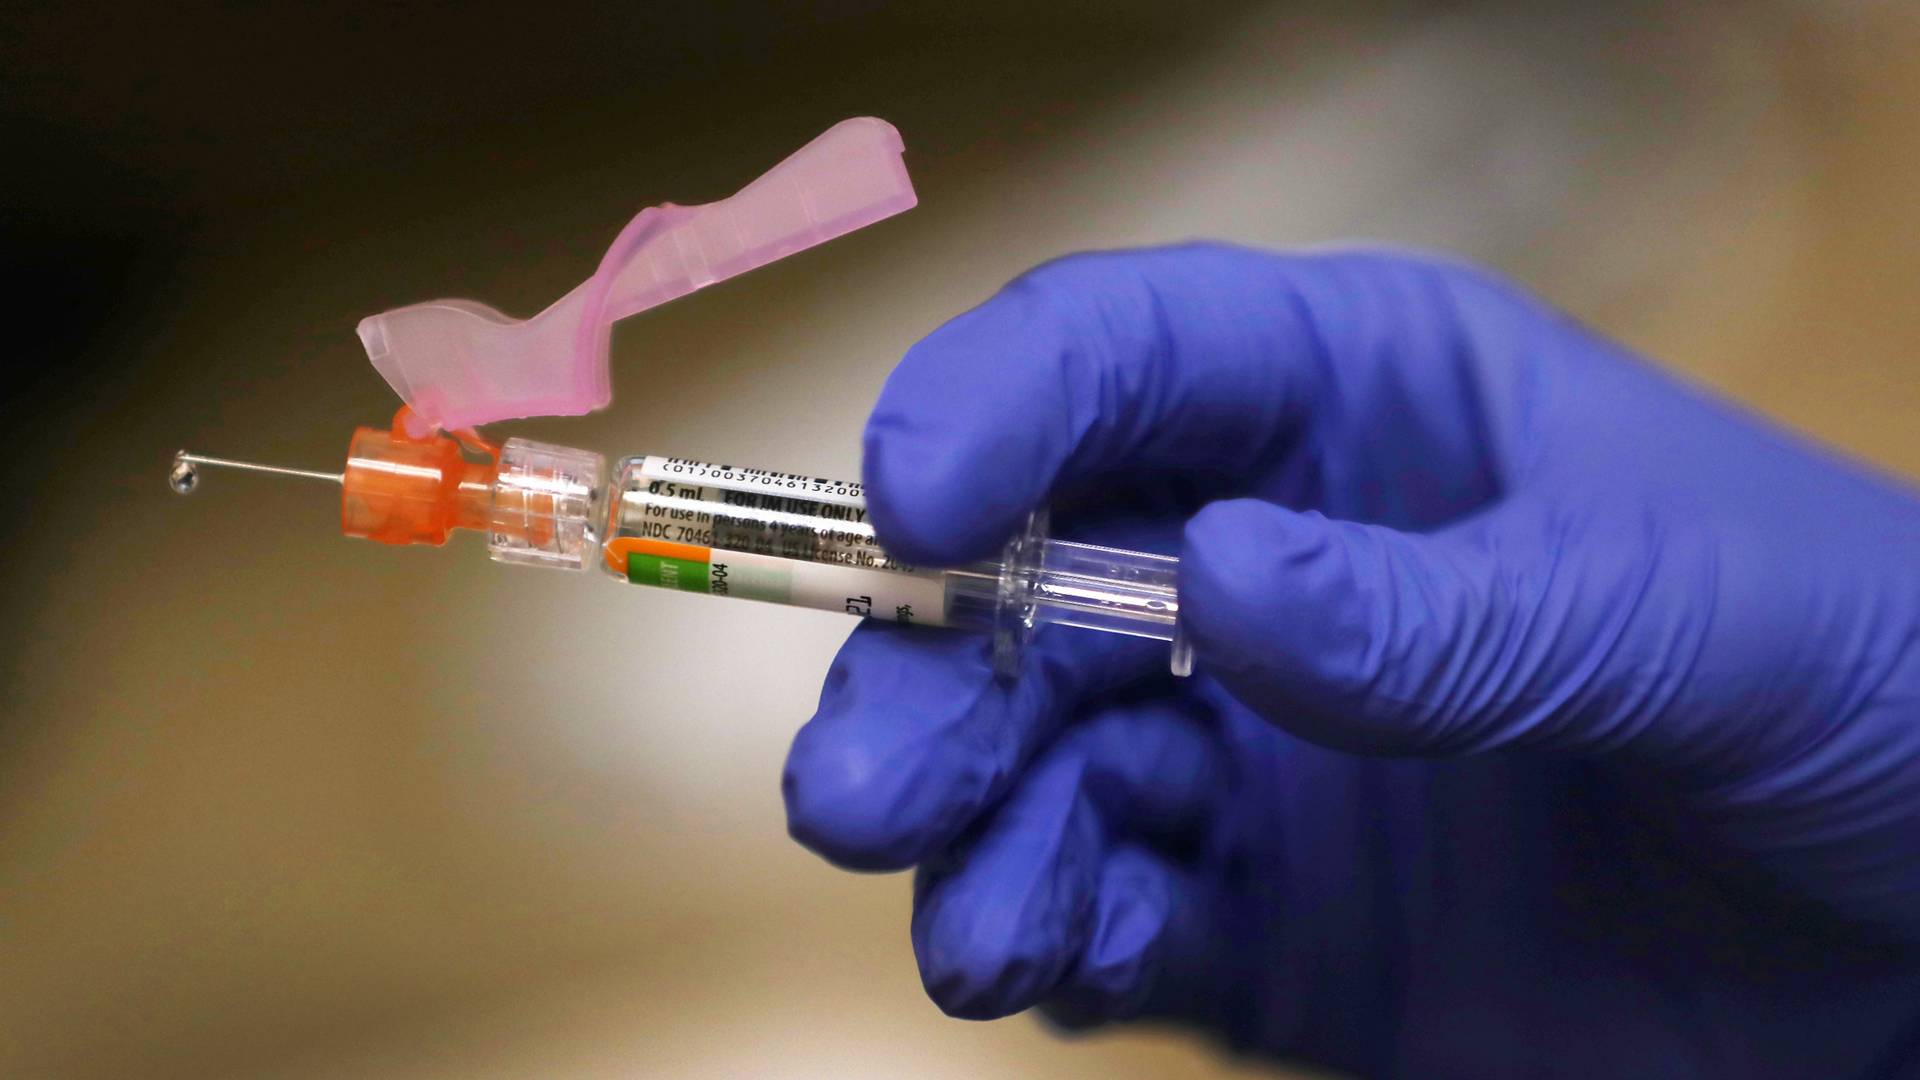 Hatalmas áttörés: előállították az első vérplazma alapú vakcinát